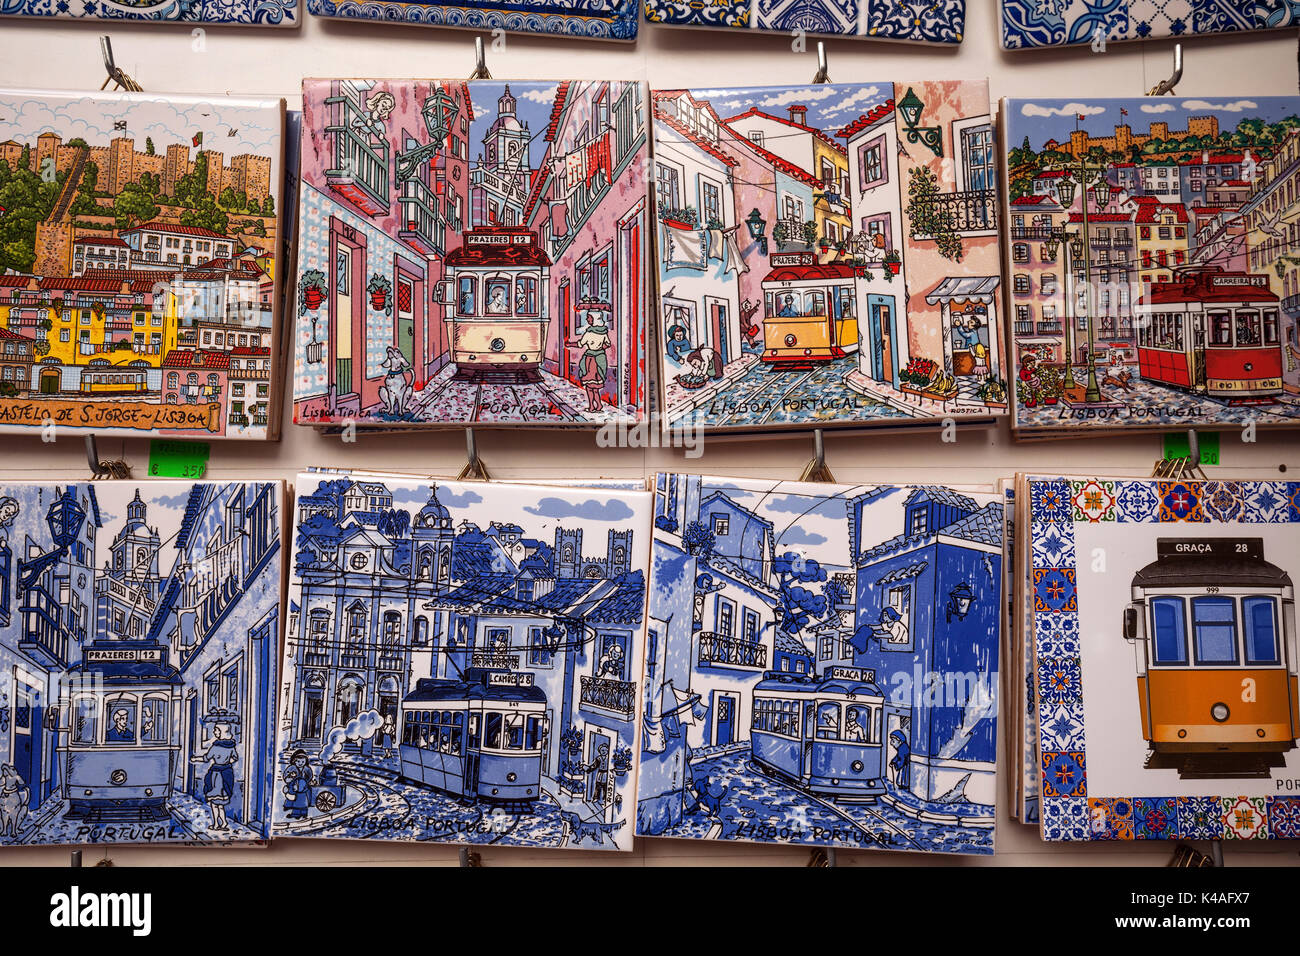 Des souvenirs, des miniatures de tuiles azulejo traditionnel, Lisbonne, Portugal Banque D'Images